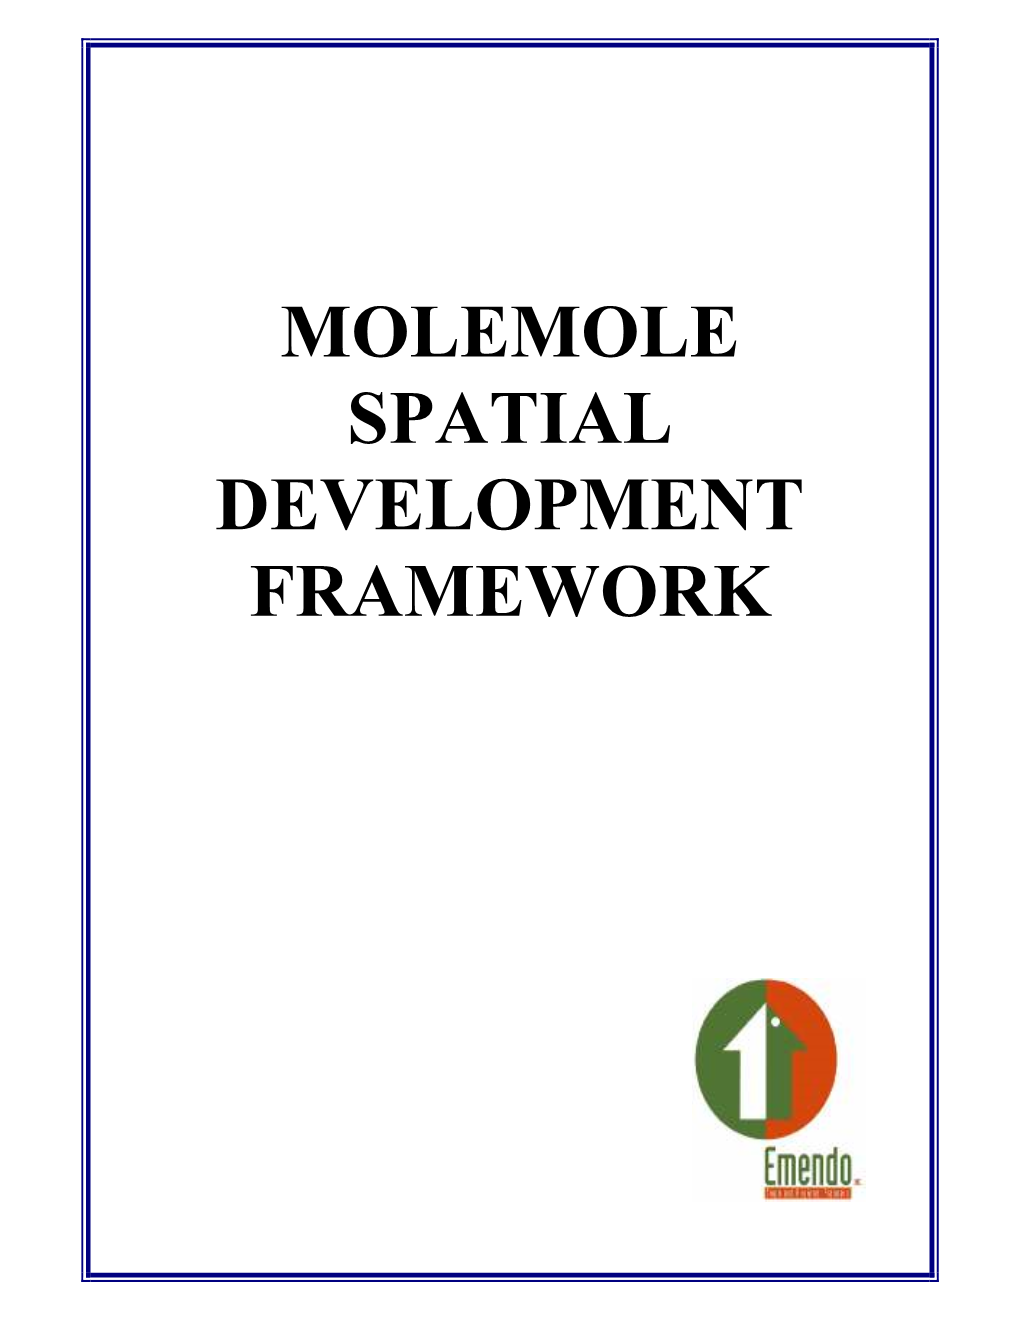 Molemole Spatial Development Framework